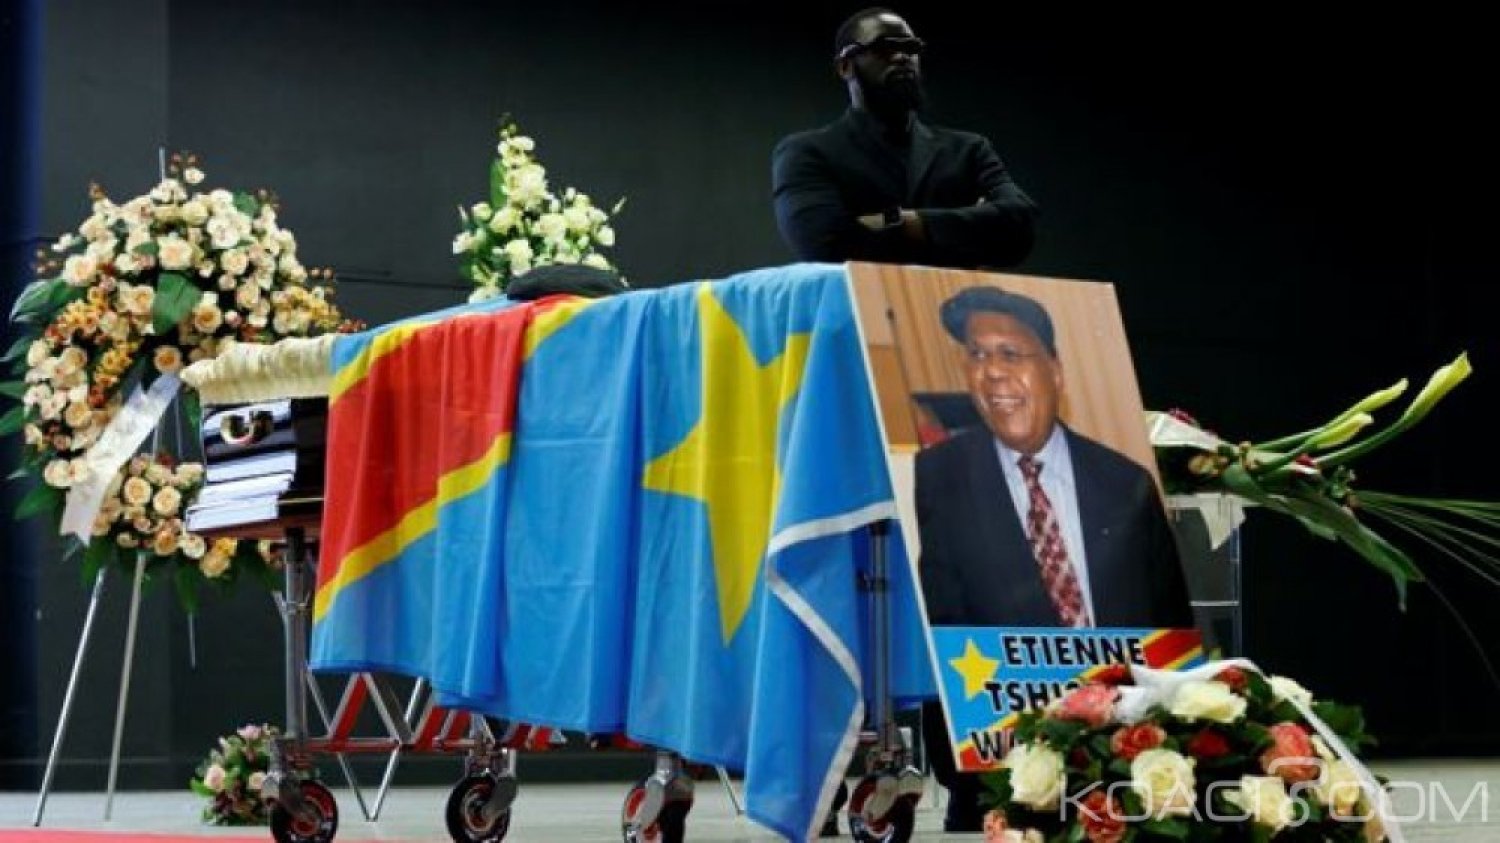 Côte d'Ivoire : Guillaume Soro aux obsèques d'Étienne Tshisekedi en RDC